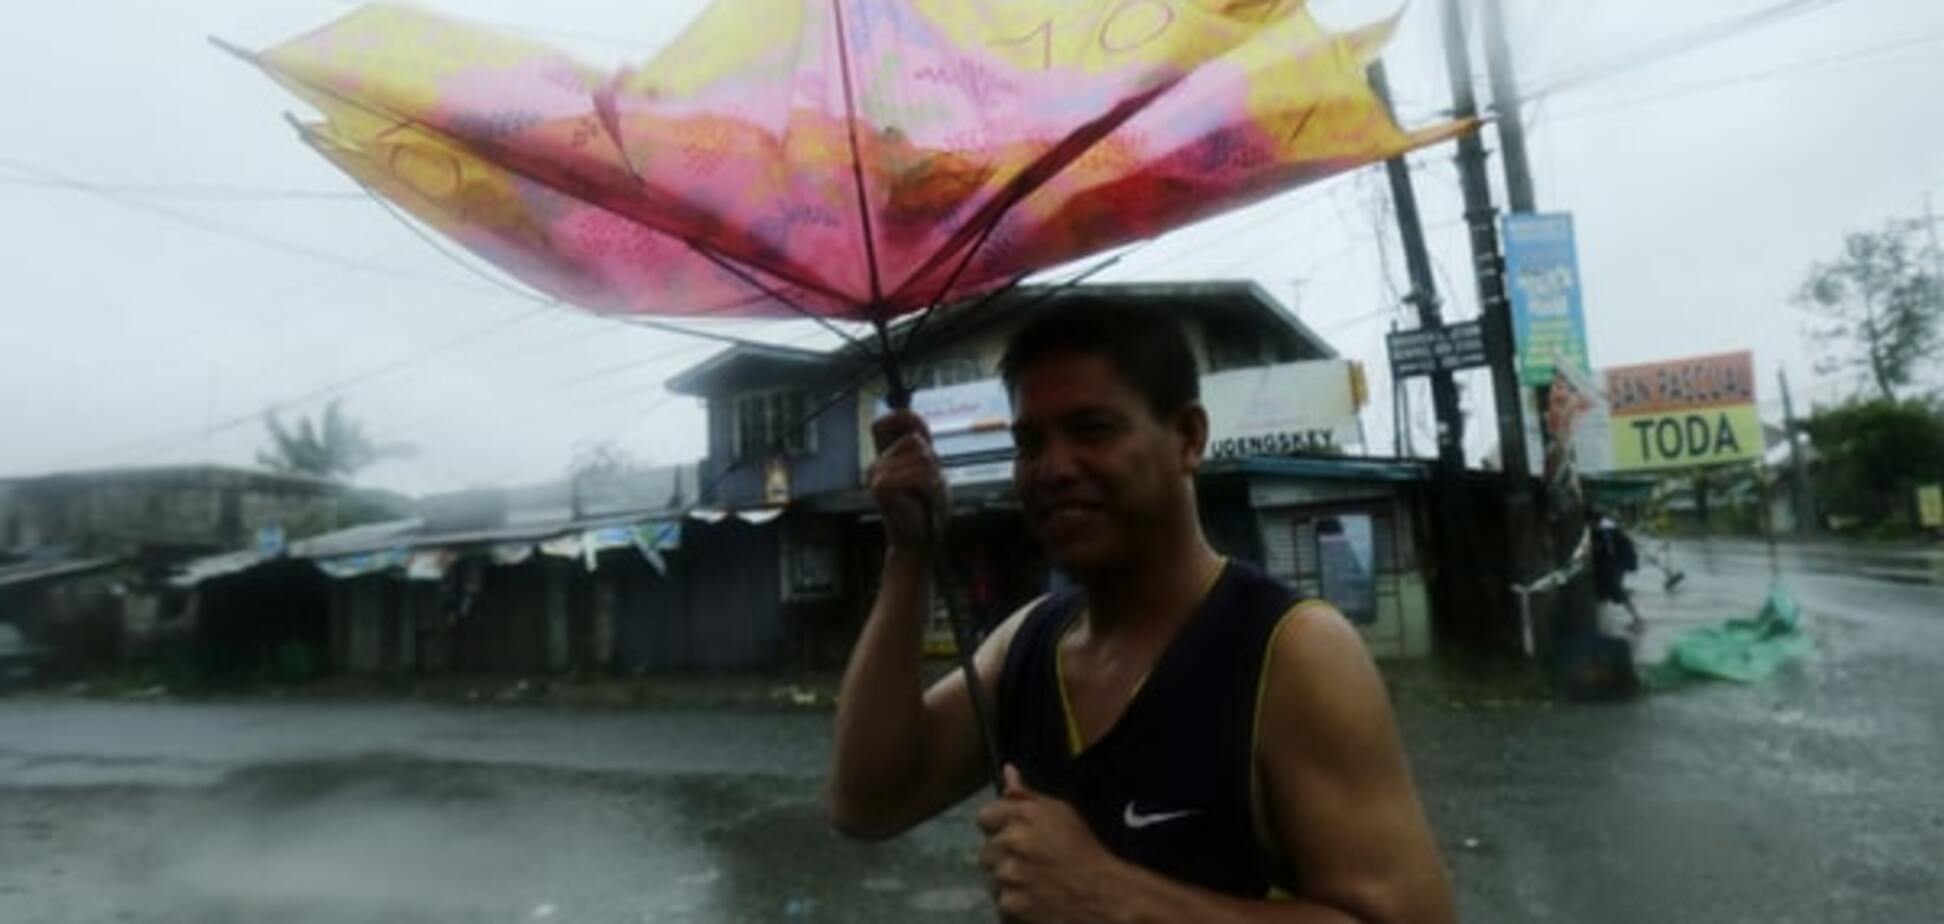 Тайфун на Філіппінах: зруйновані будинки, евакуйовані 10 тис. осіб - фото і відео стихії